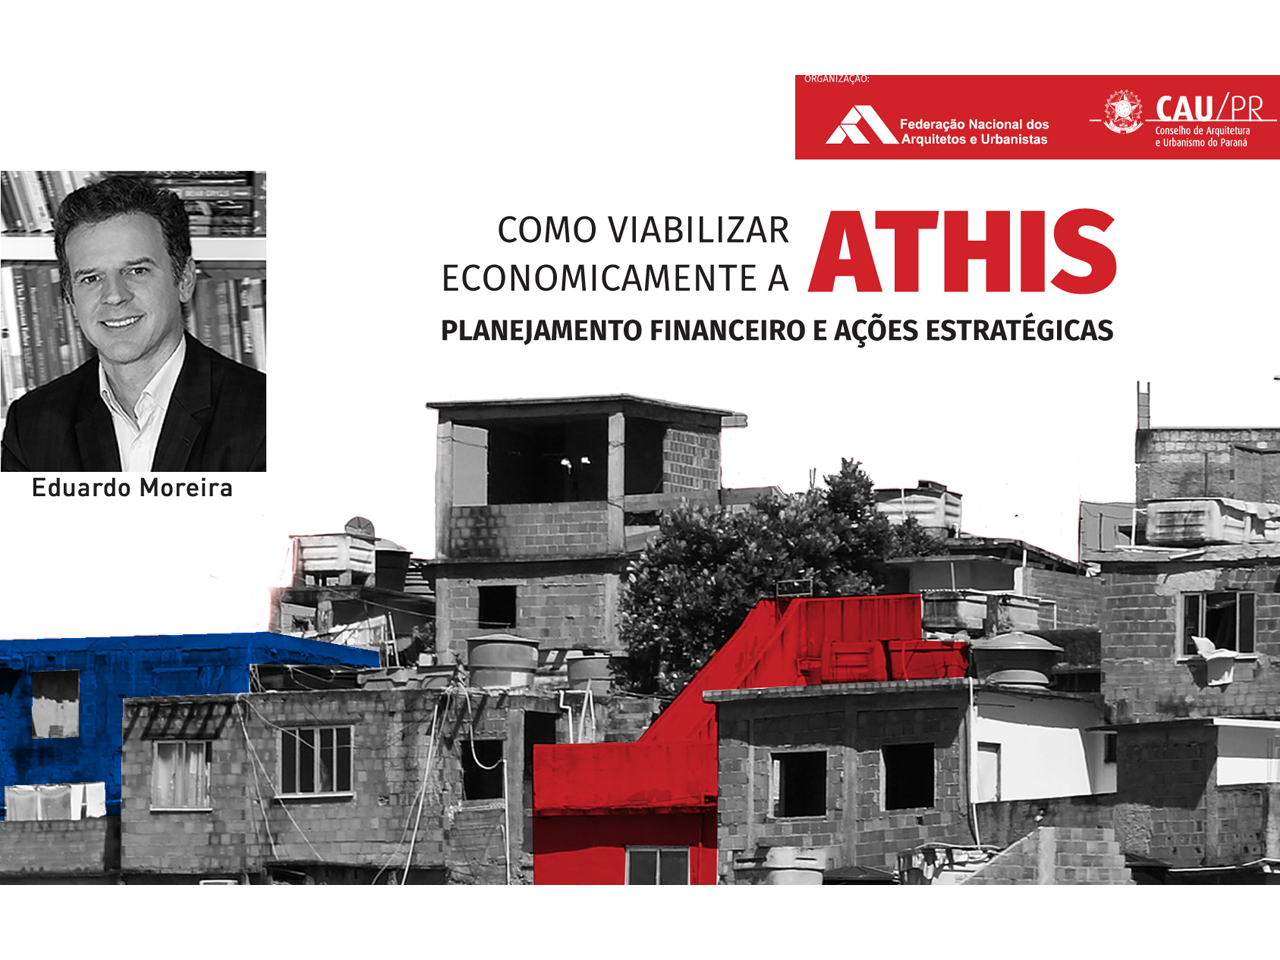 Eduardo Moreira palestra, nesta sexta, sobre ATHIS em Curitiba